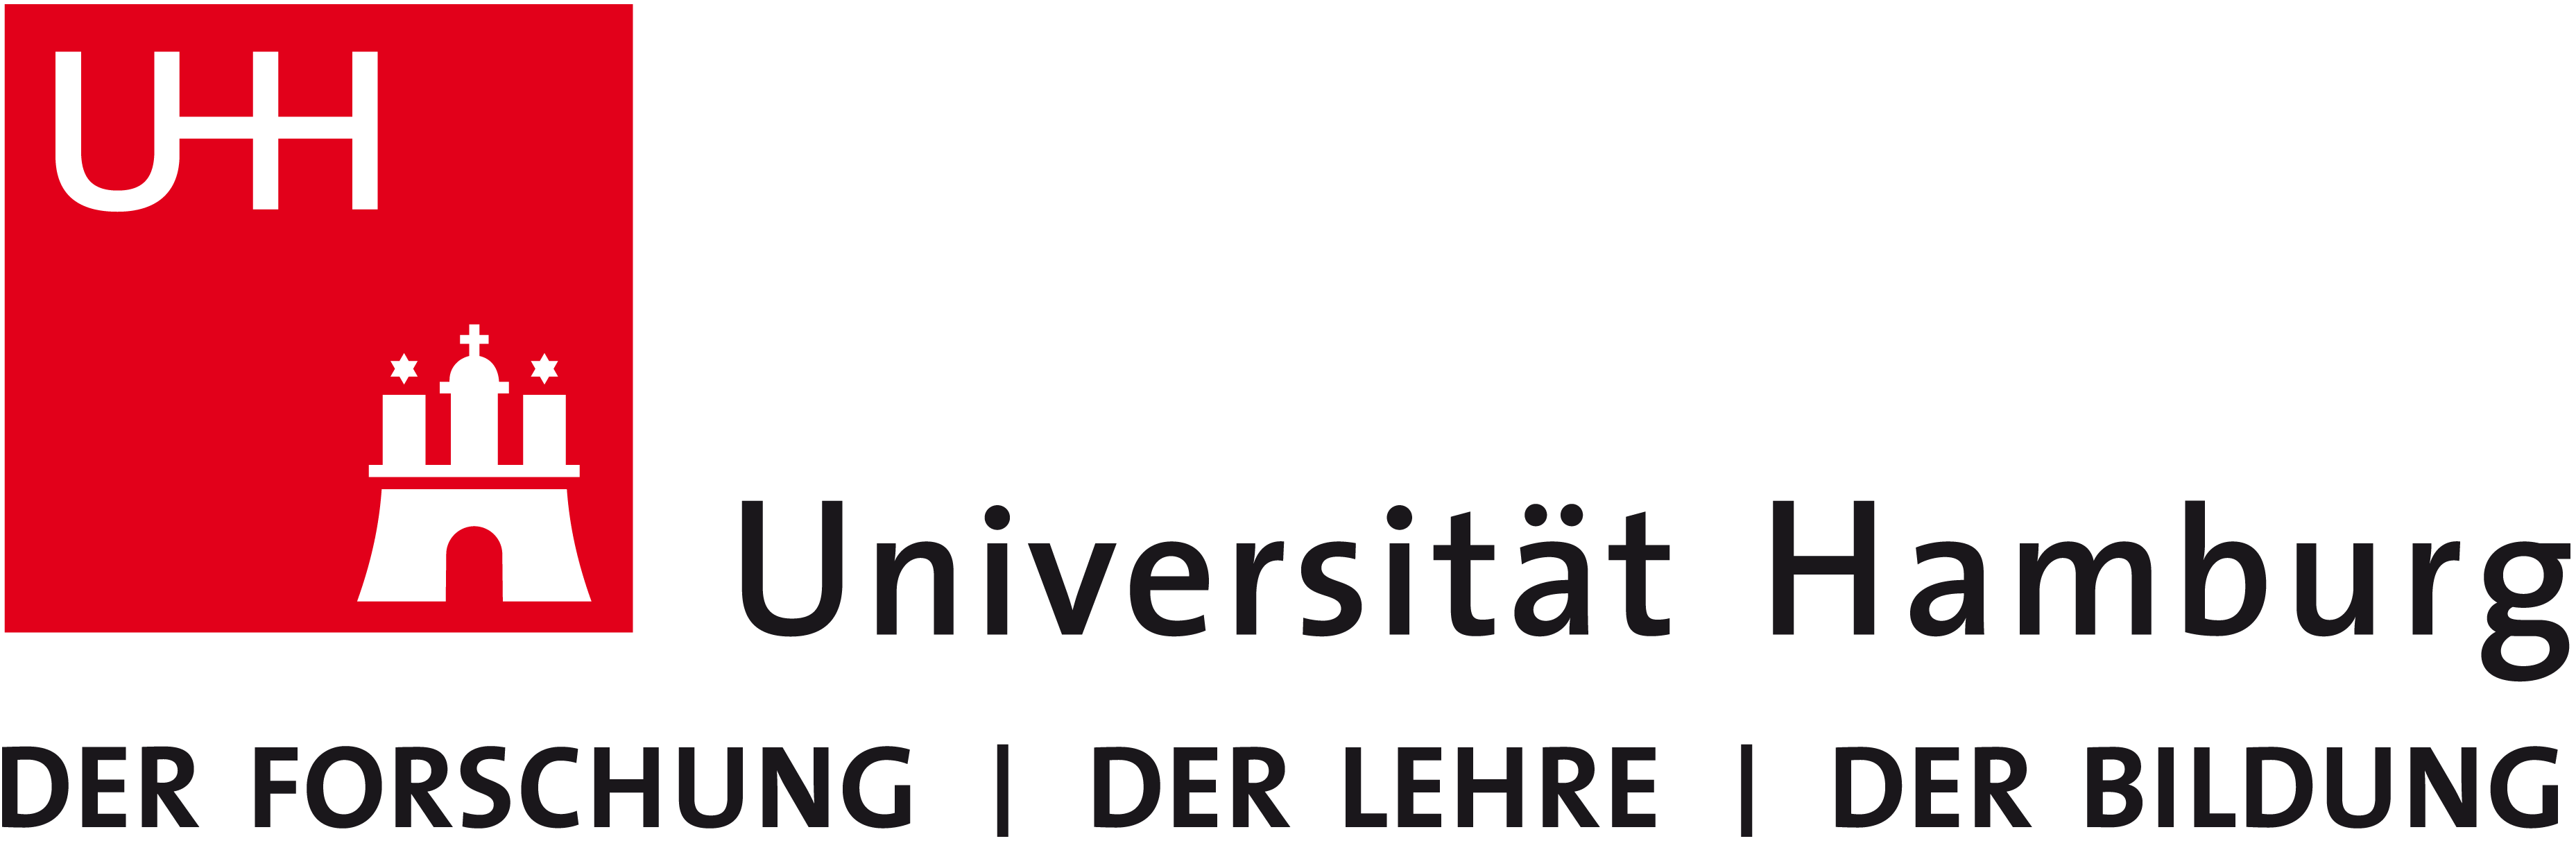 Universität Hamburg - der Forschung, der Lehre, der Bildung, zur Homepage